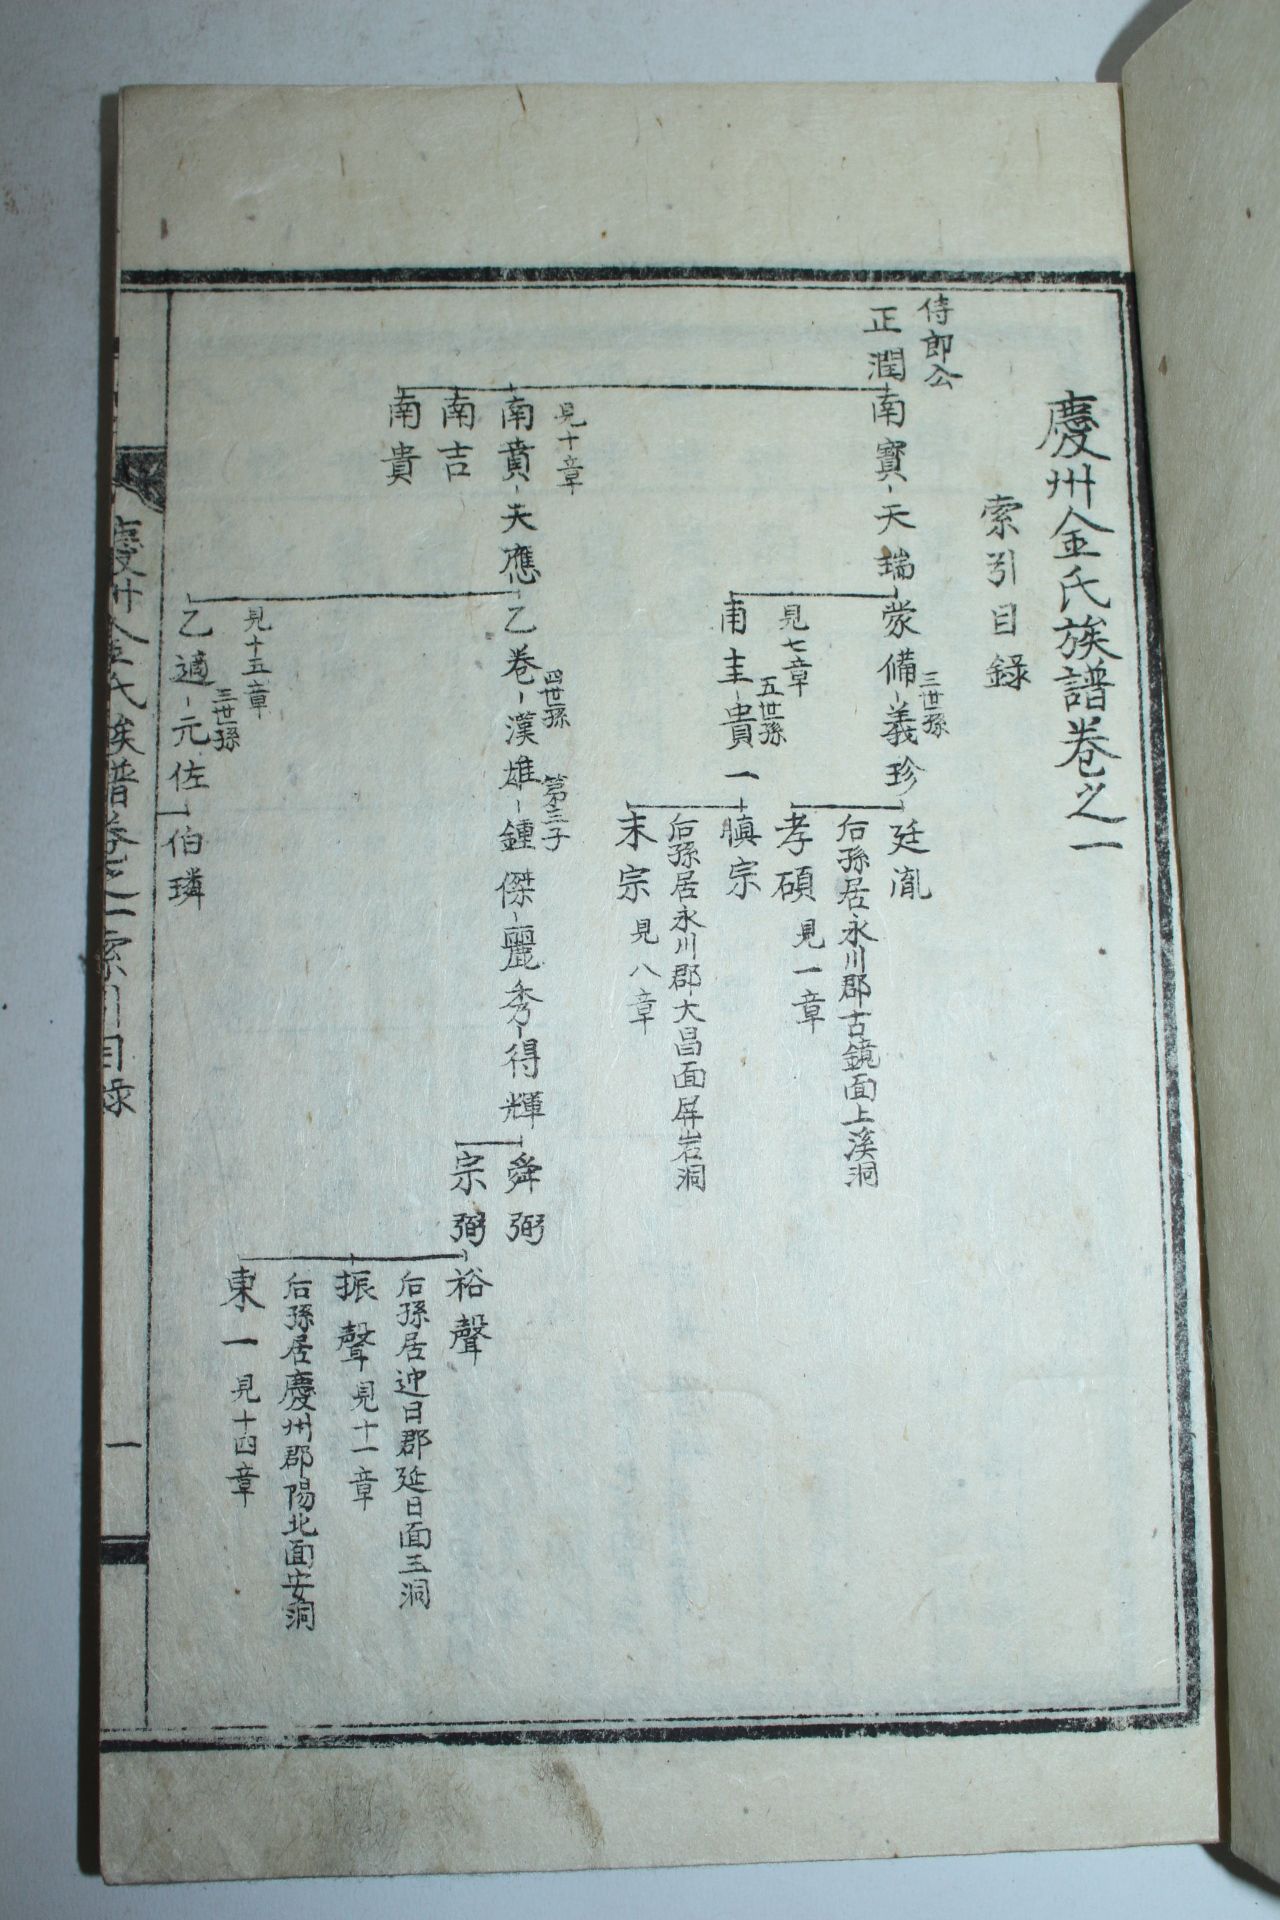 1955년 영천간행 경주김씨족보(慶州金氏族譜) 2책완질